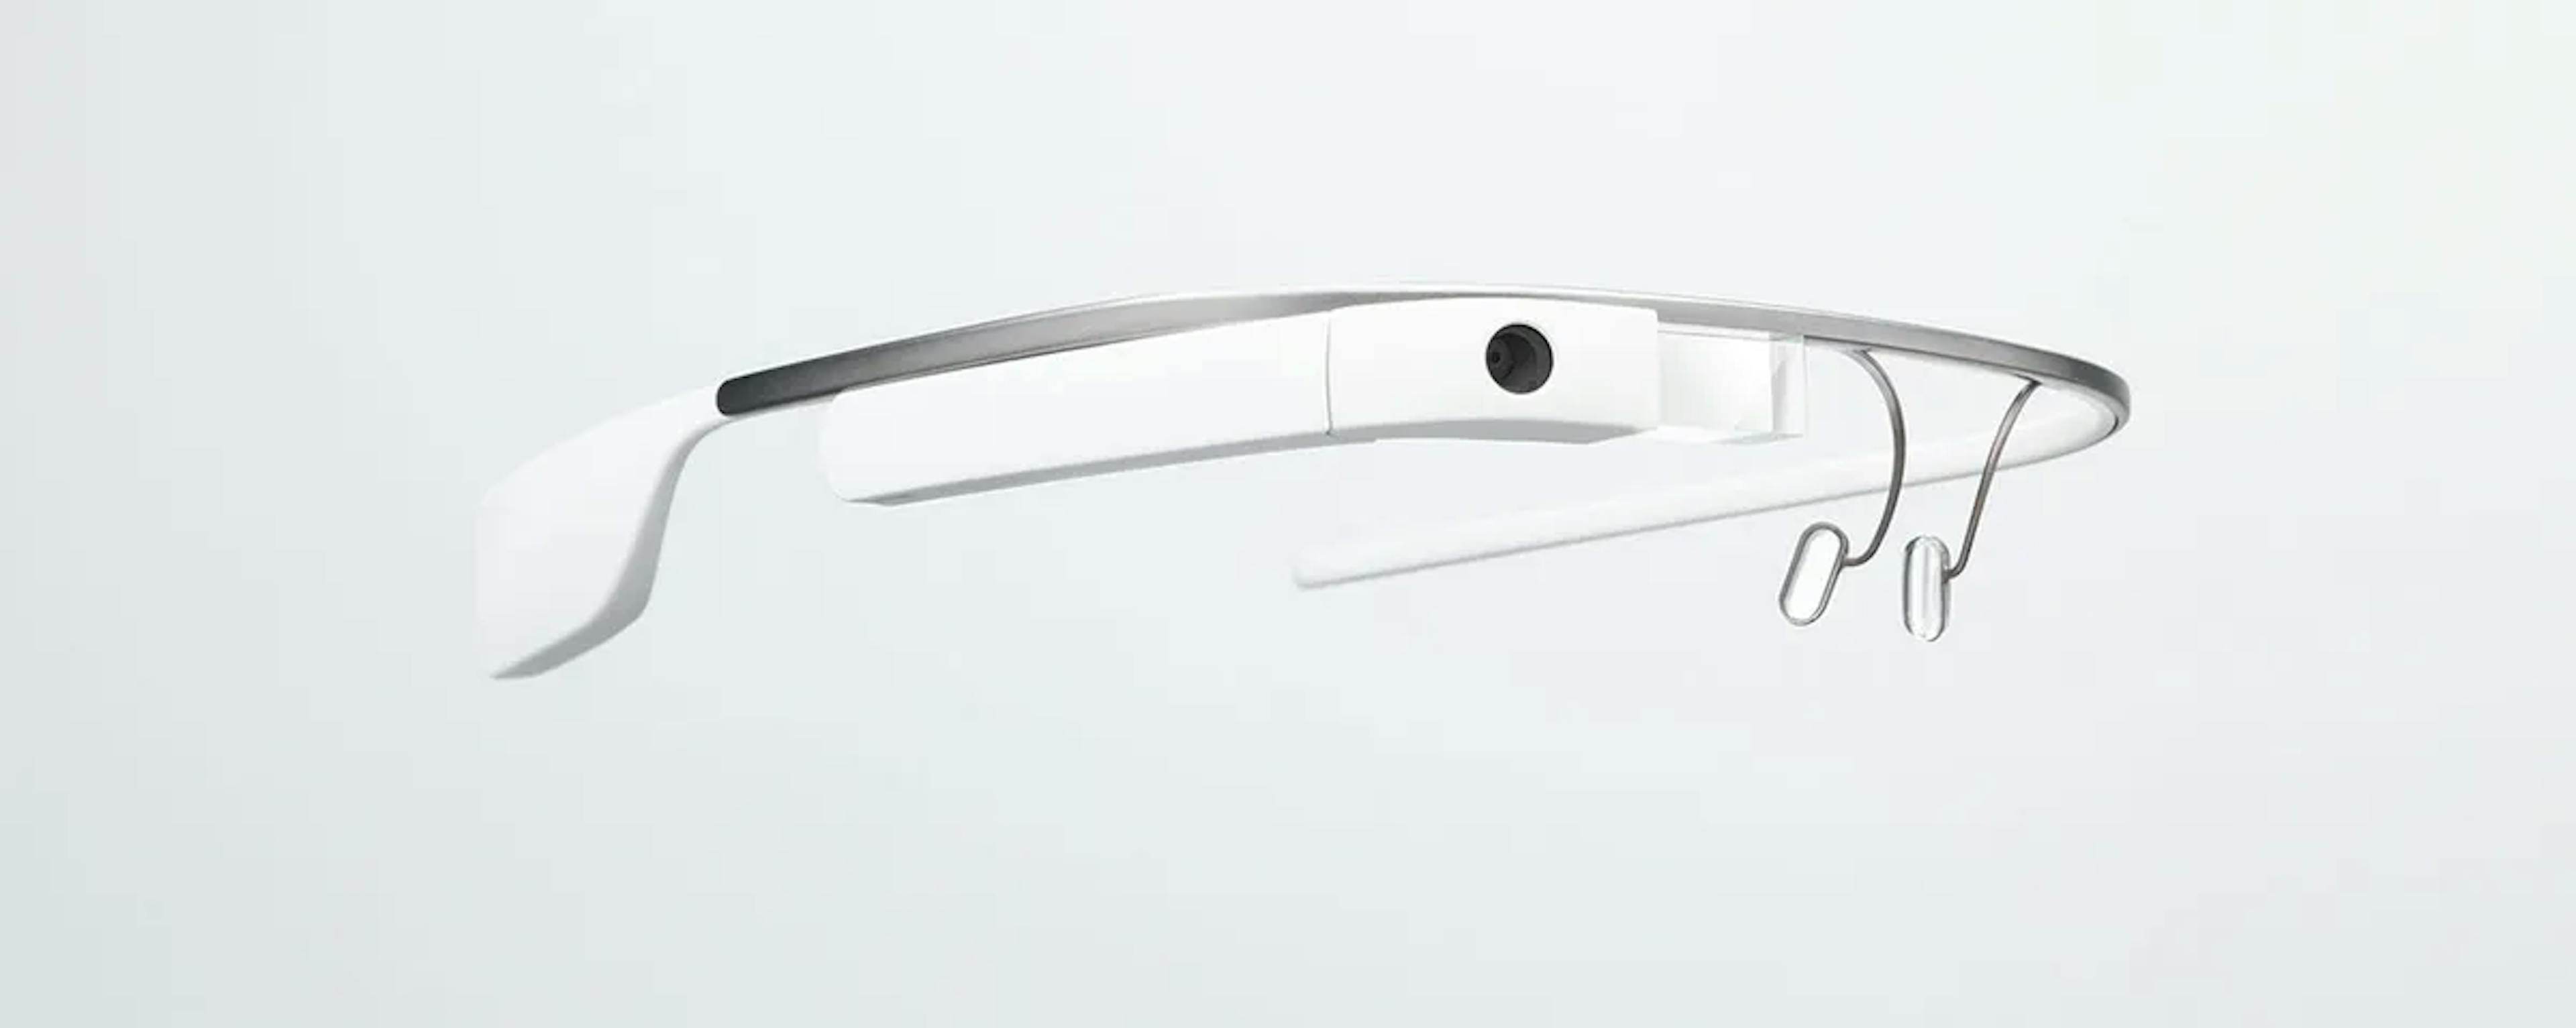  Die fragliche Google Glass